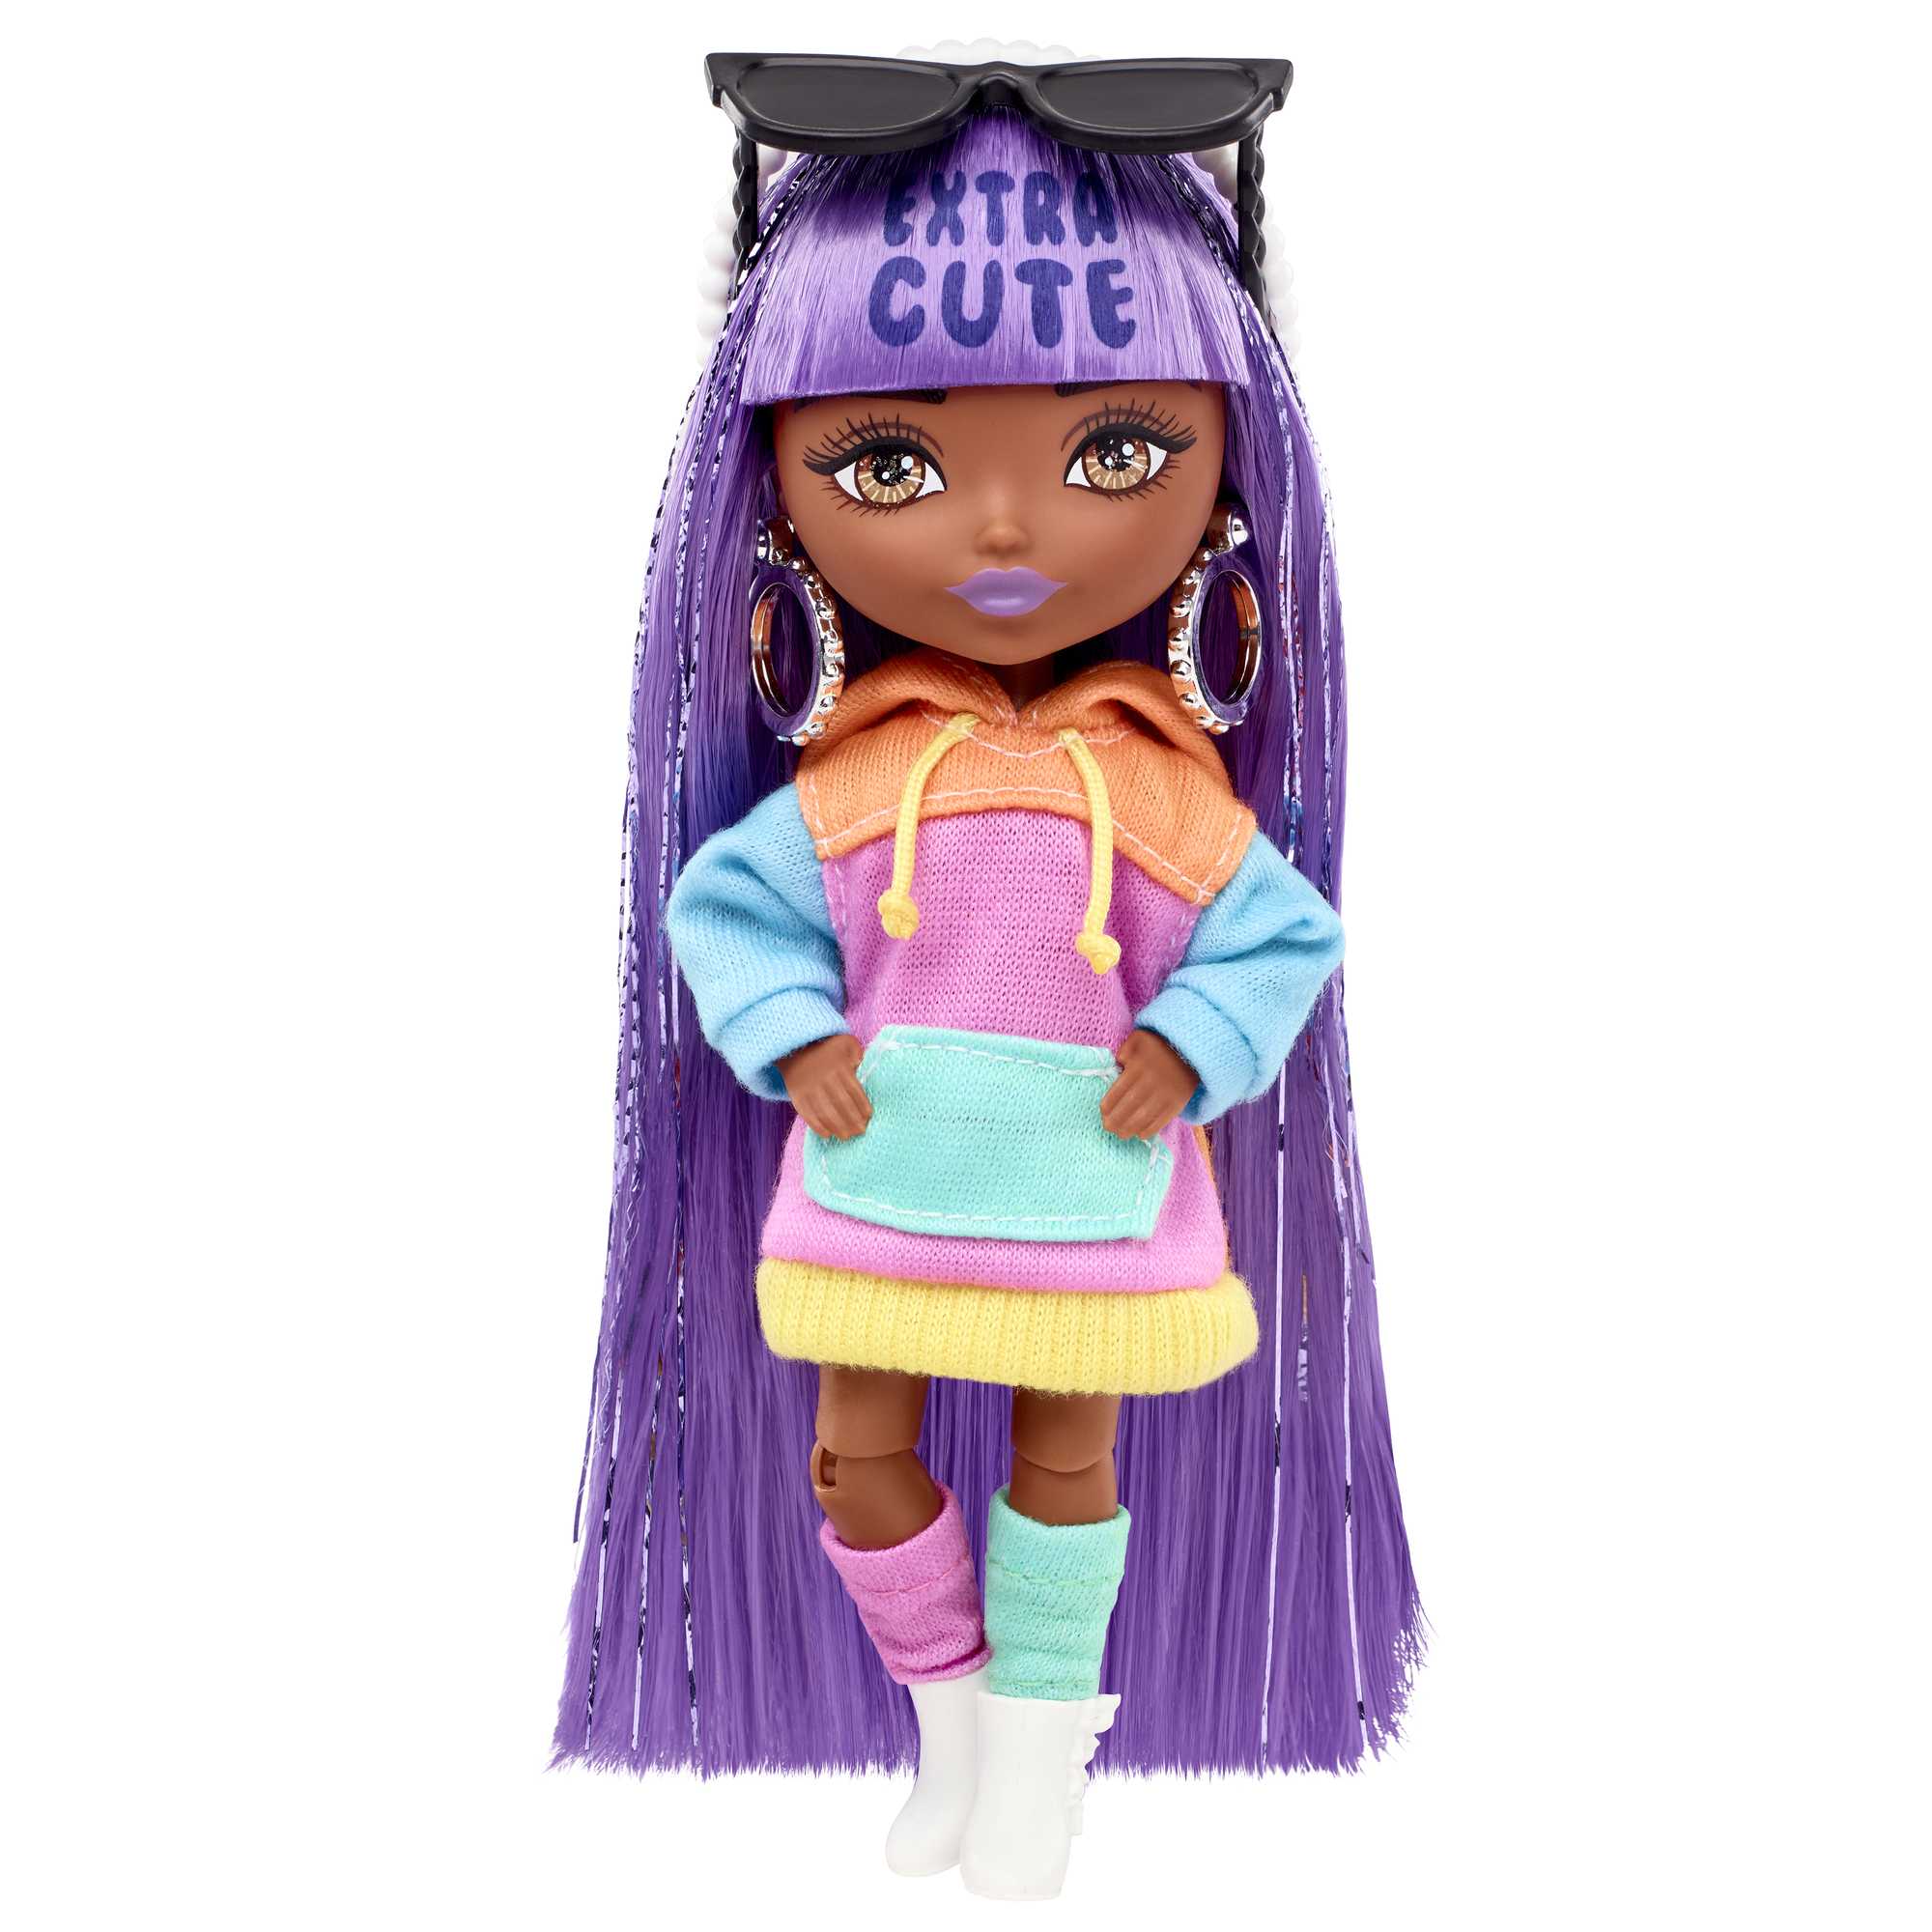 Кукла Barbie Экстра Мини Девочка с сиреневыми волосами HGP62HJK66 barbie кукла экстра мини минис